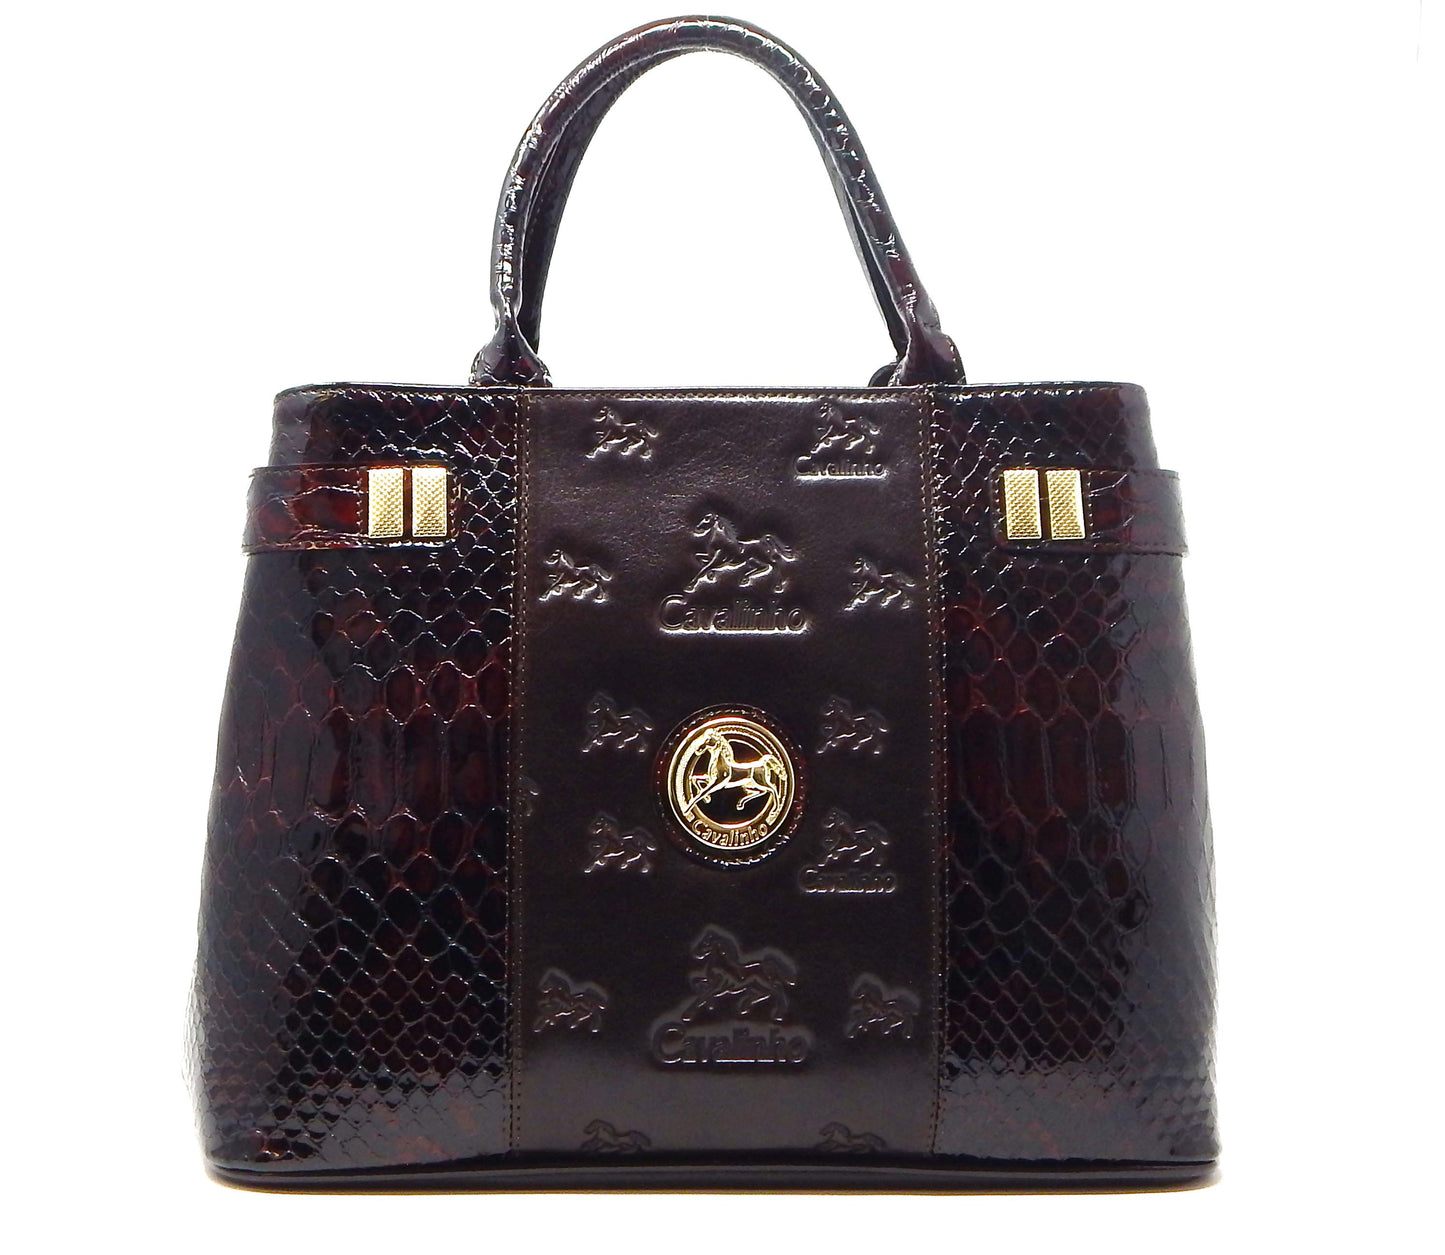 #color_ Brown | Cavalinho Honor Handbag - Brown - 18190145.02.99_1